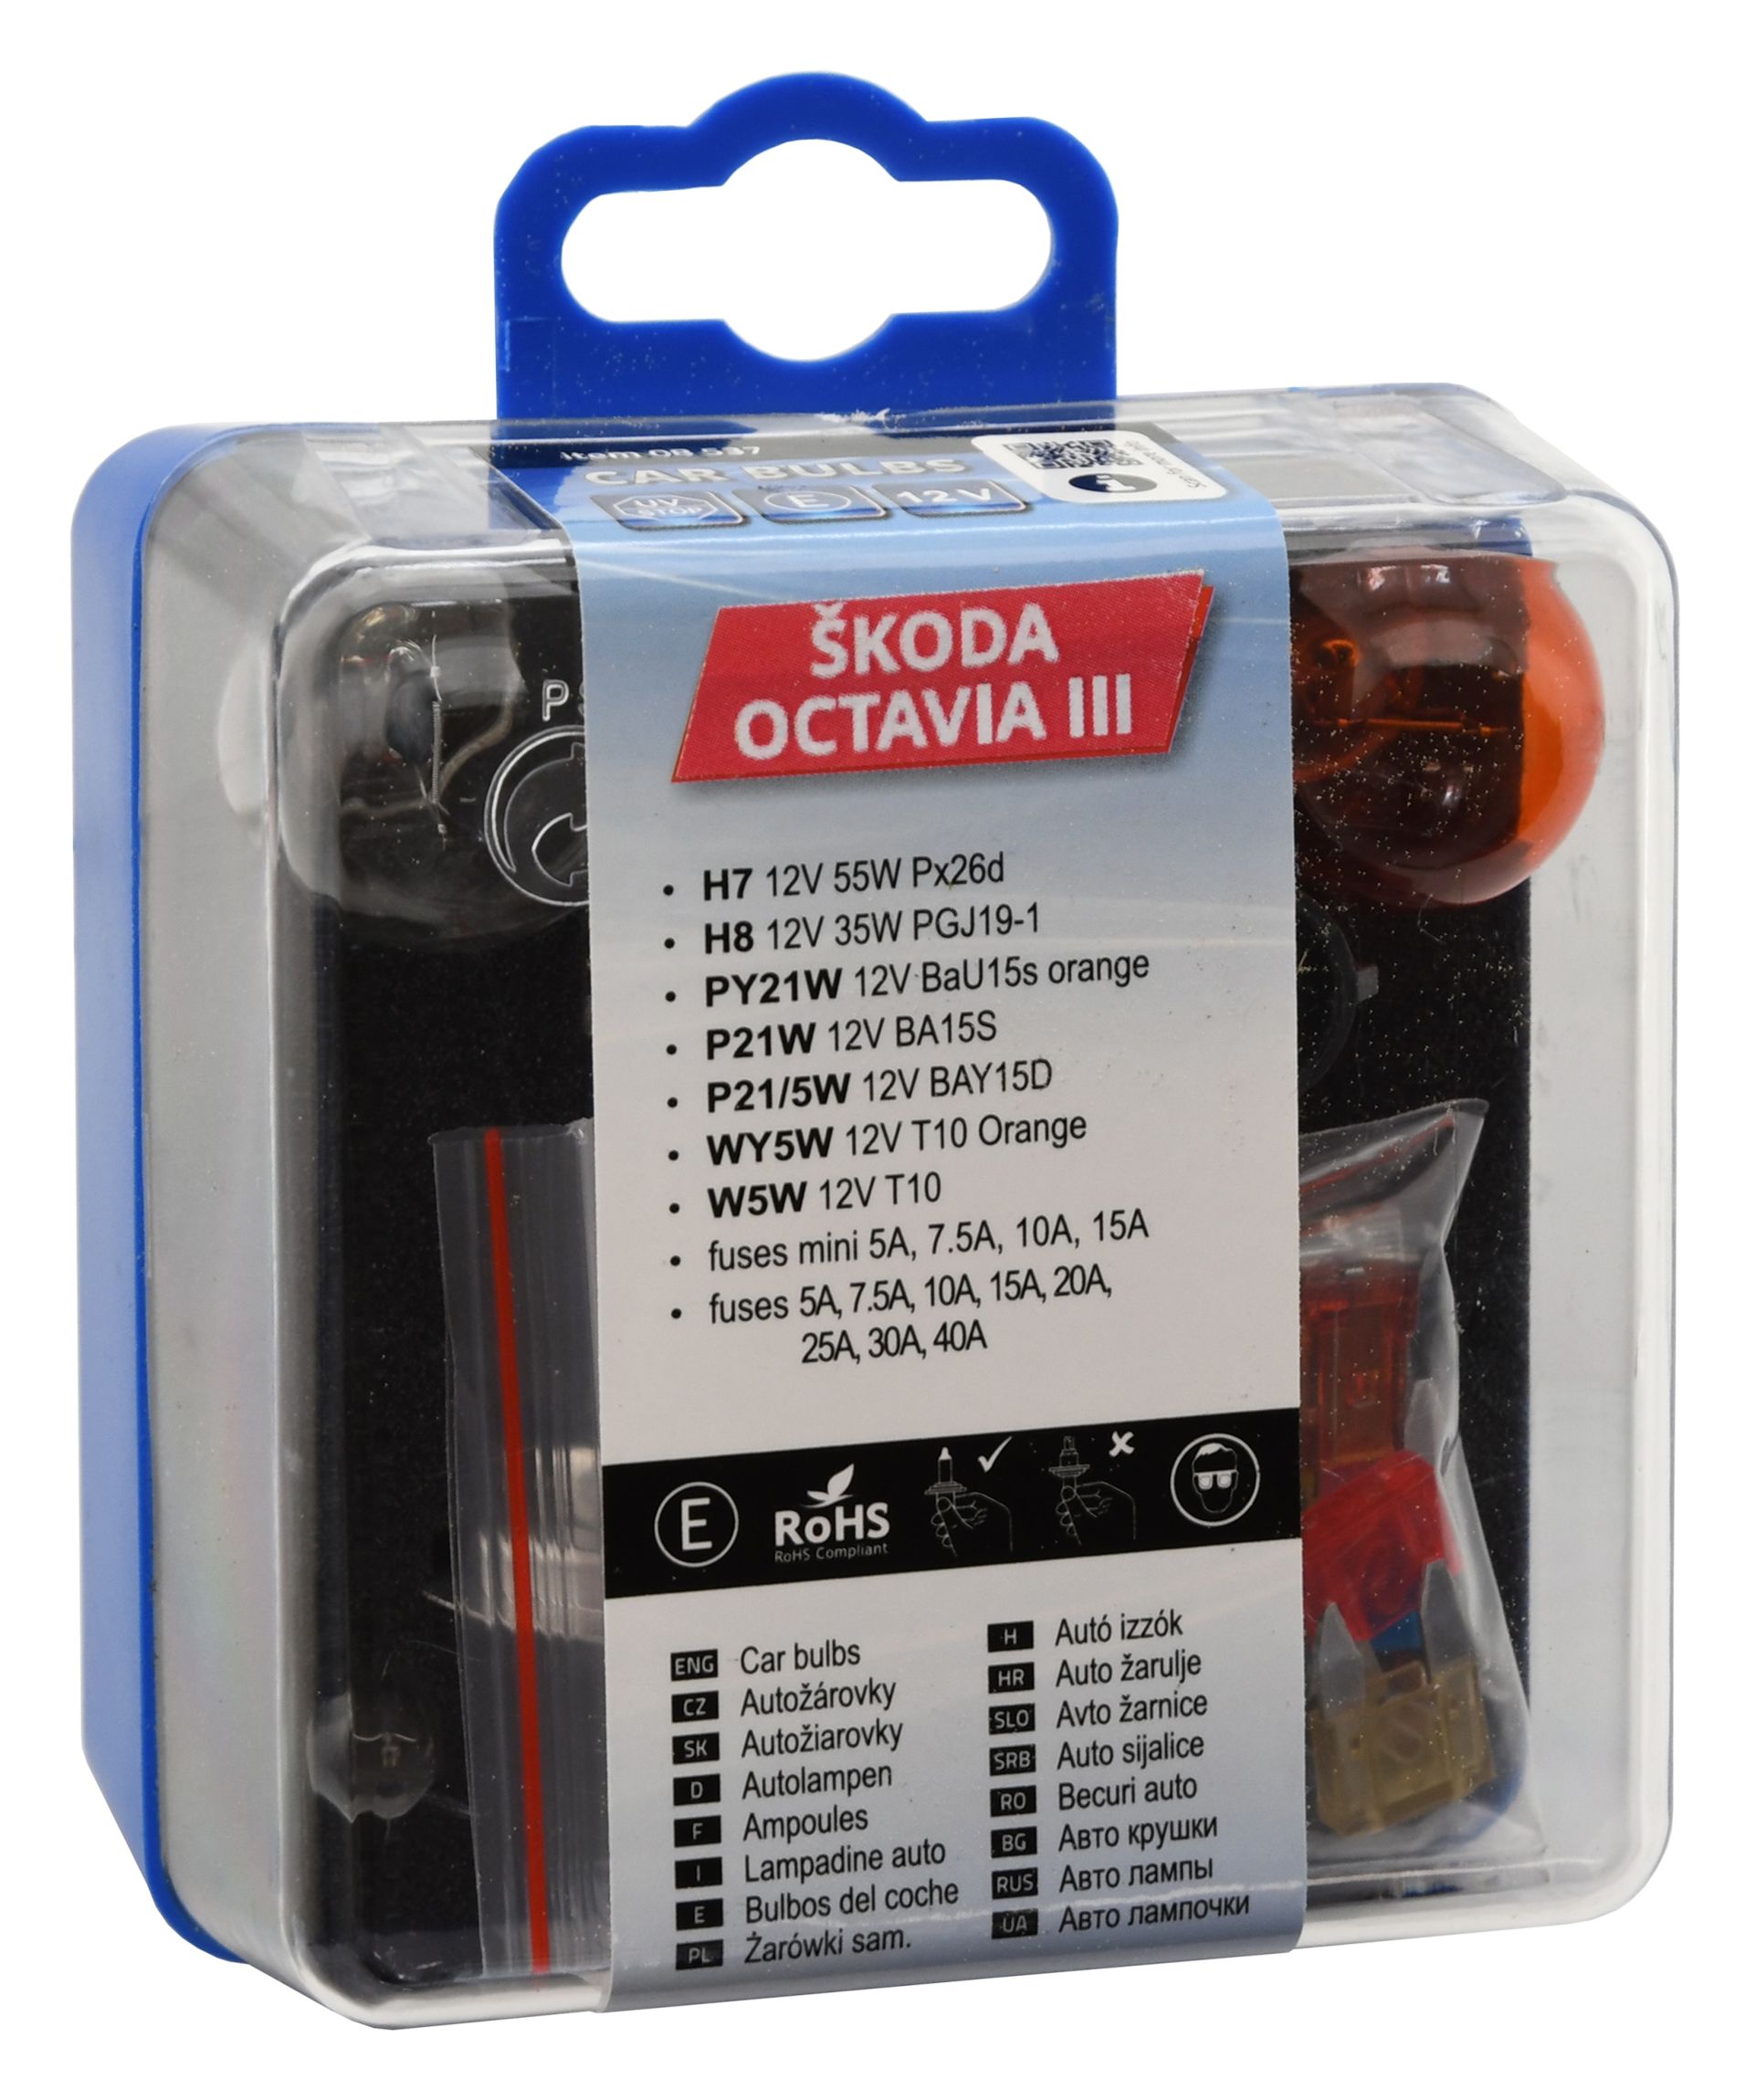 Žárovky servisní box ŠKODA OCTAVIA III H7+H8 Compass 08537